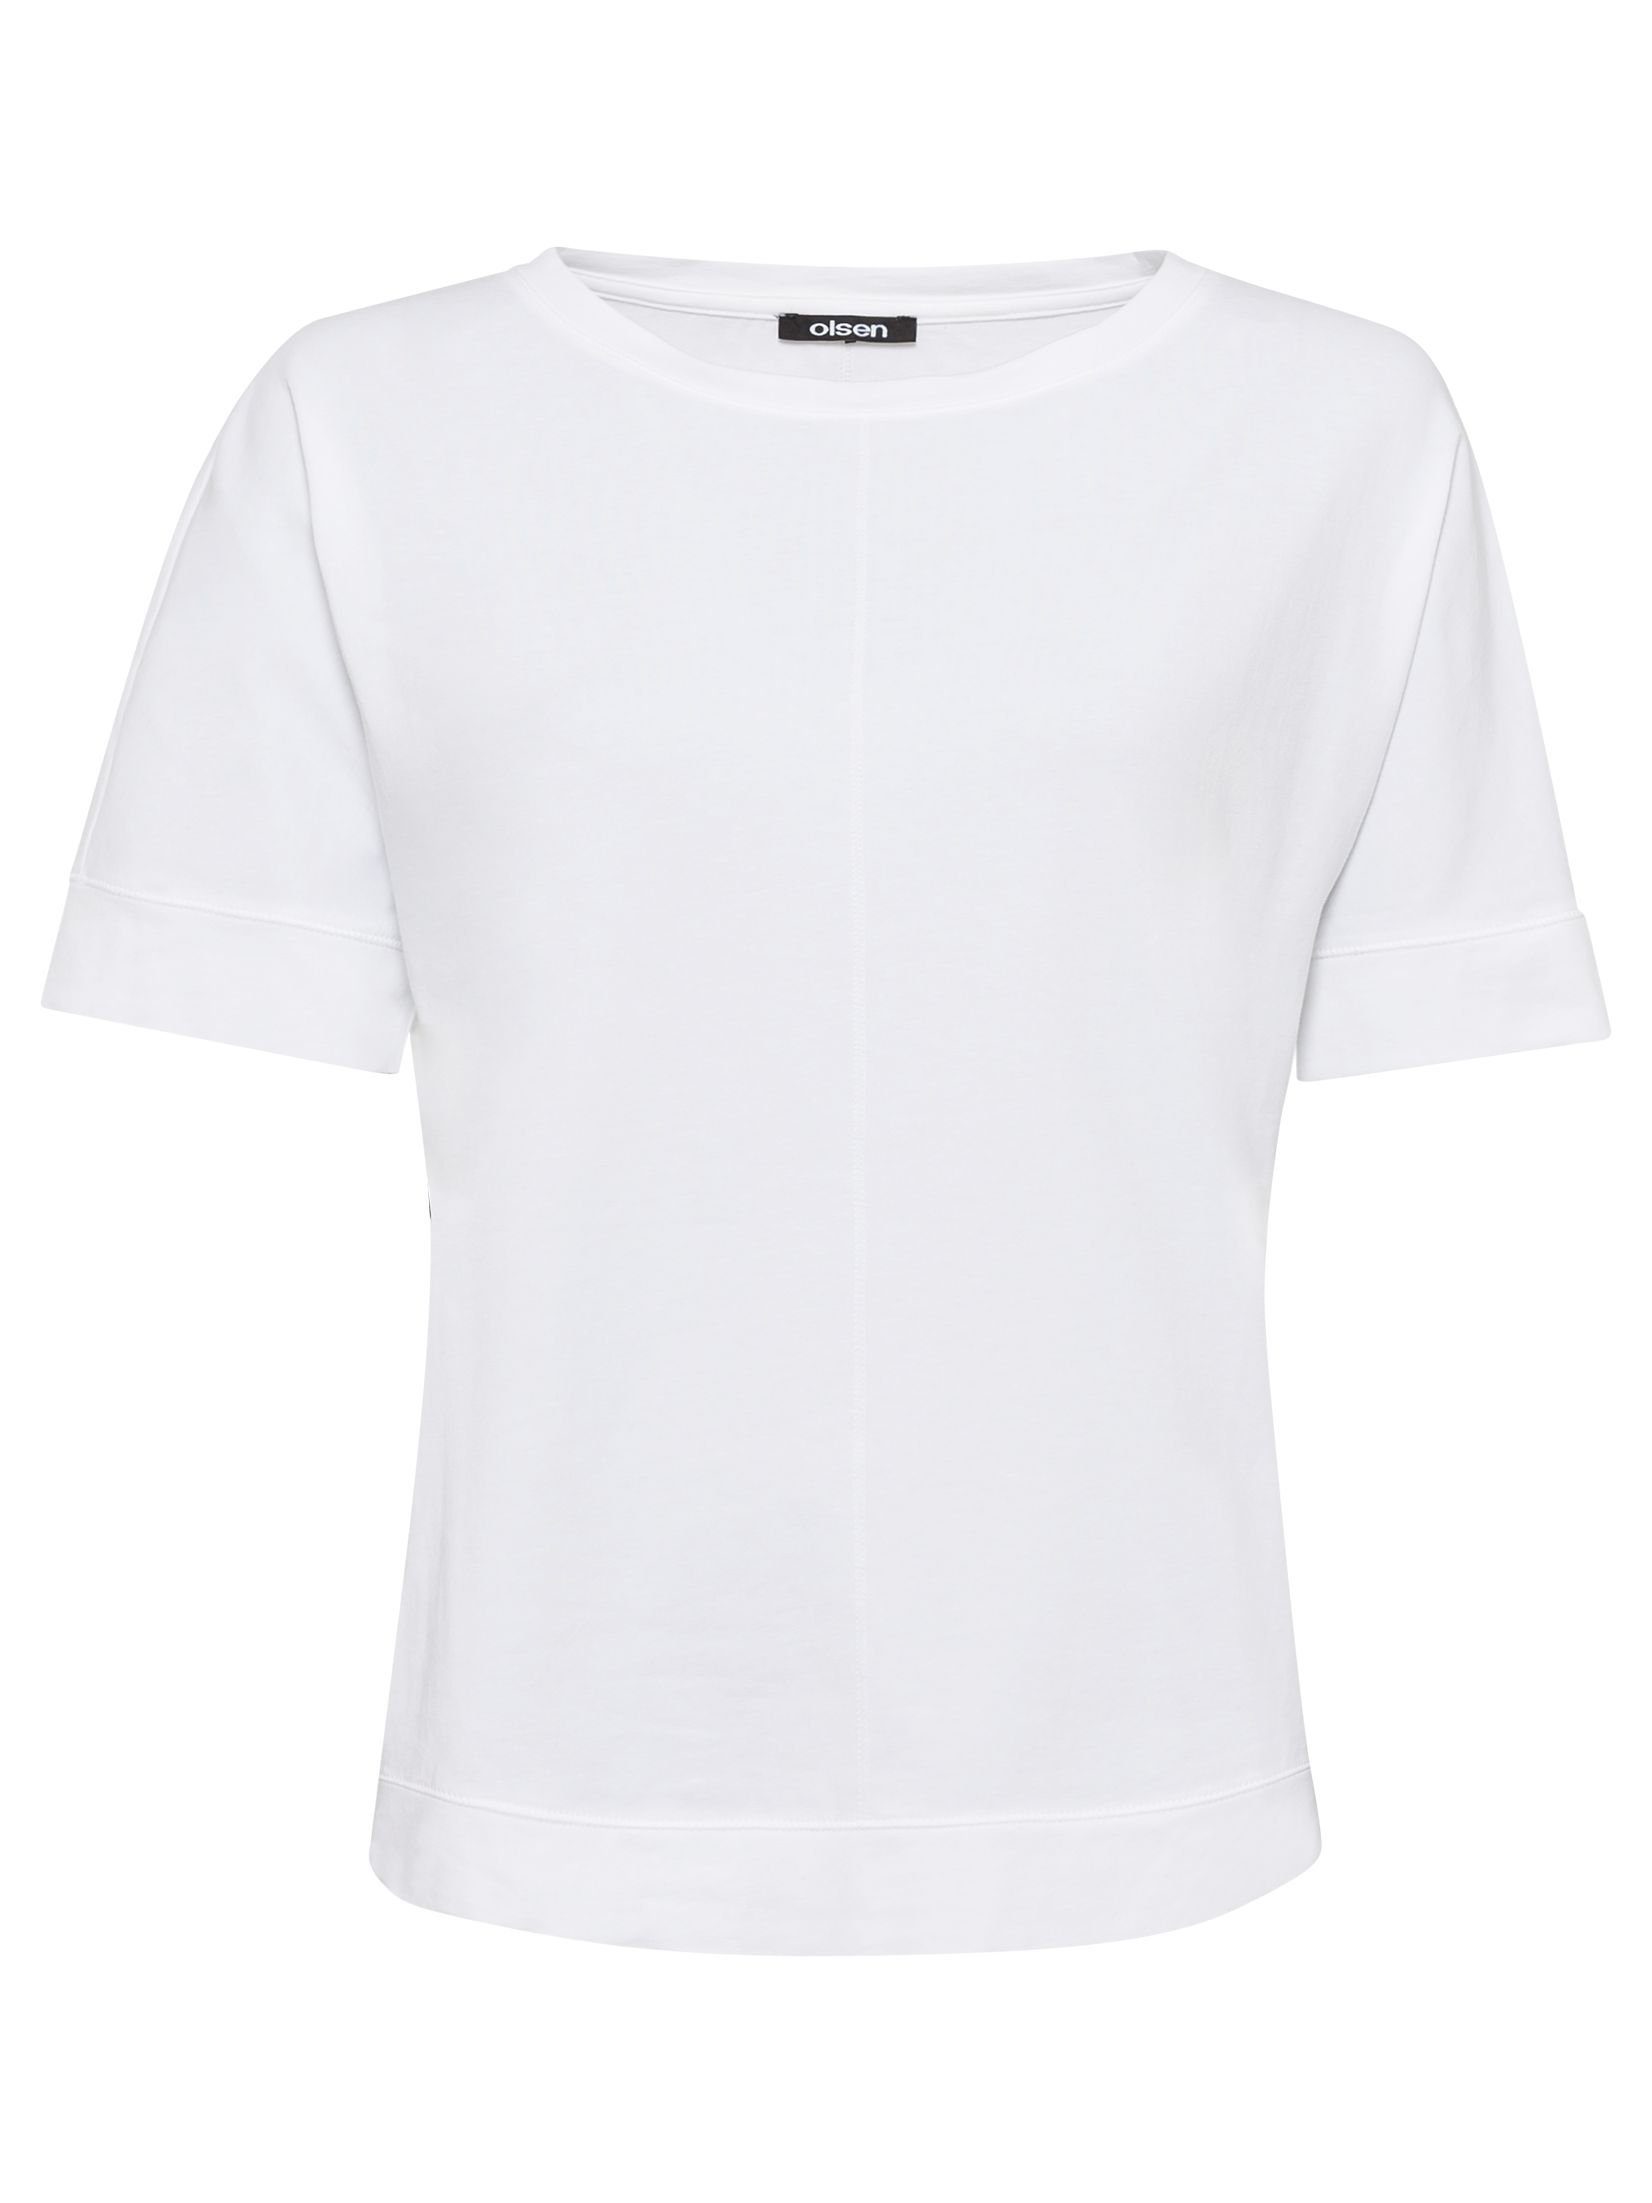 Olsen T-Shirt